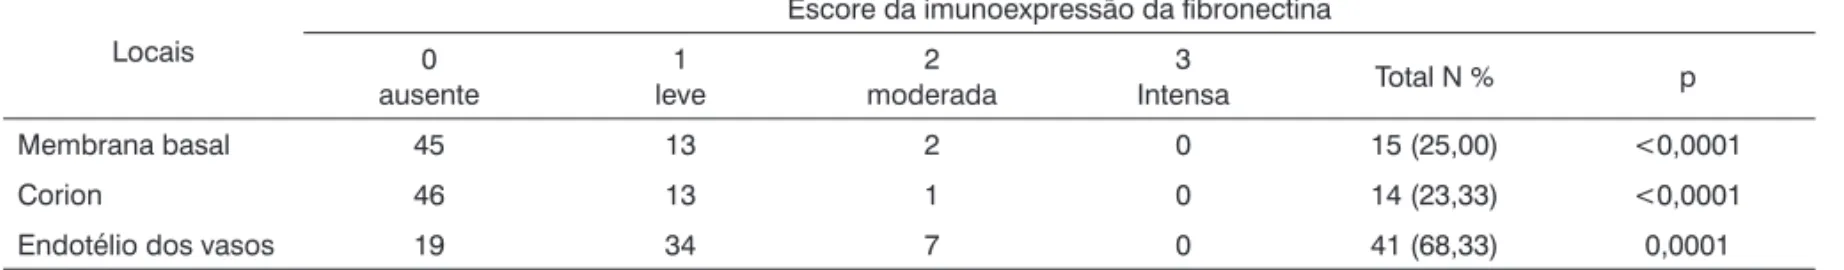 Tabela 2.  Escore semiquantitativo da imunoexpressão da laminina no edema de Reinke. Locais